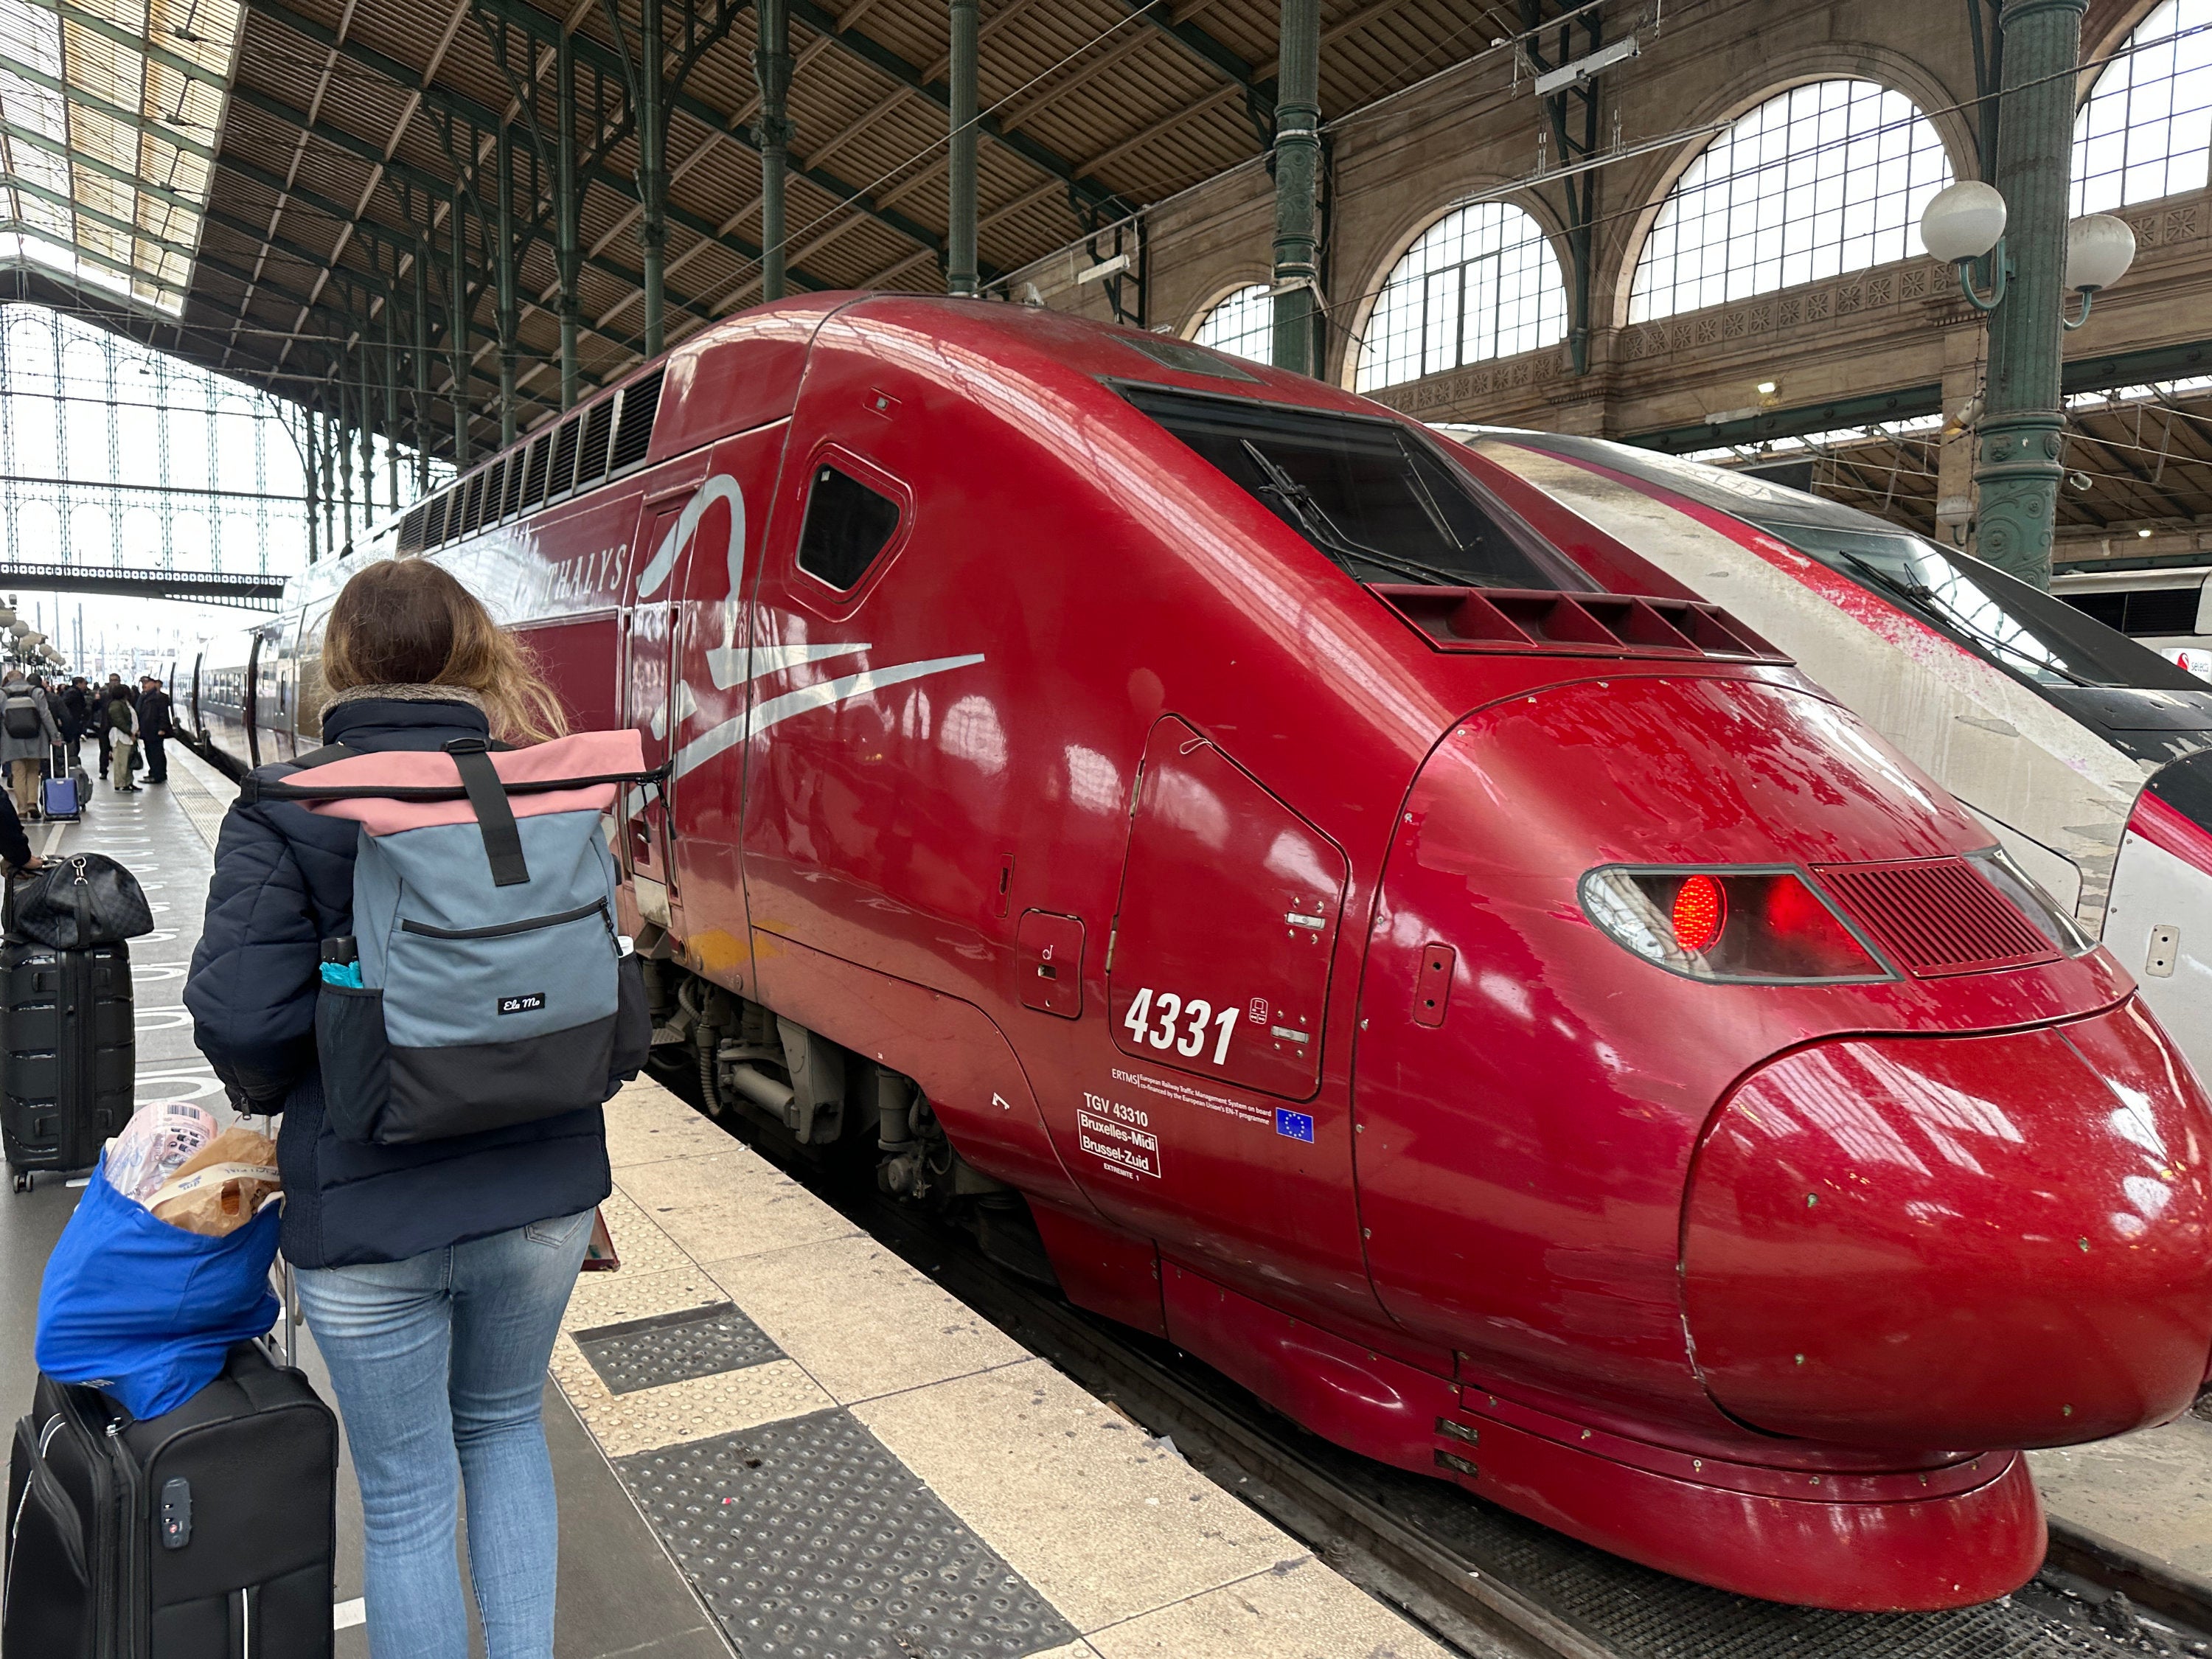 Obtenez des billets de train gratuits pour voyager en France